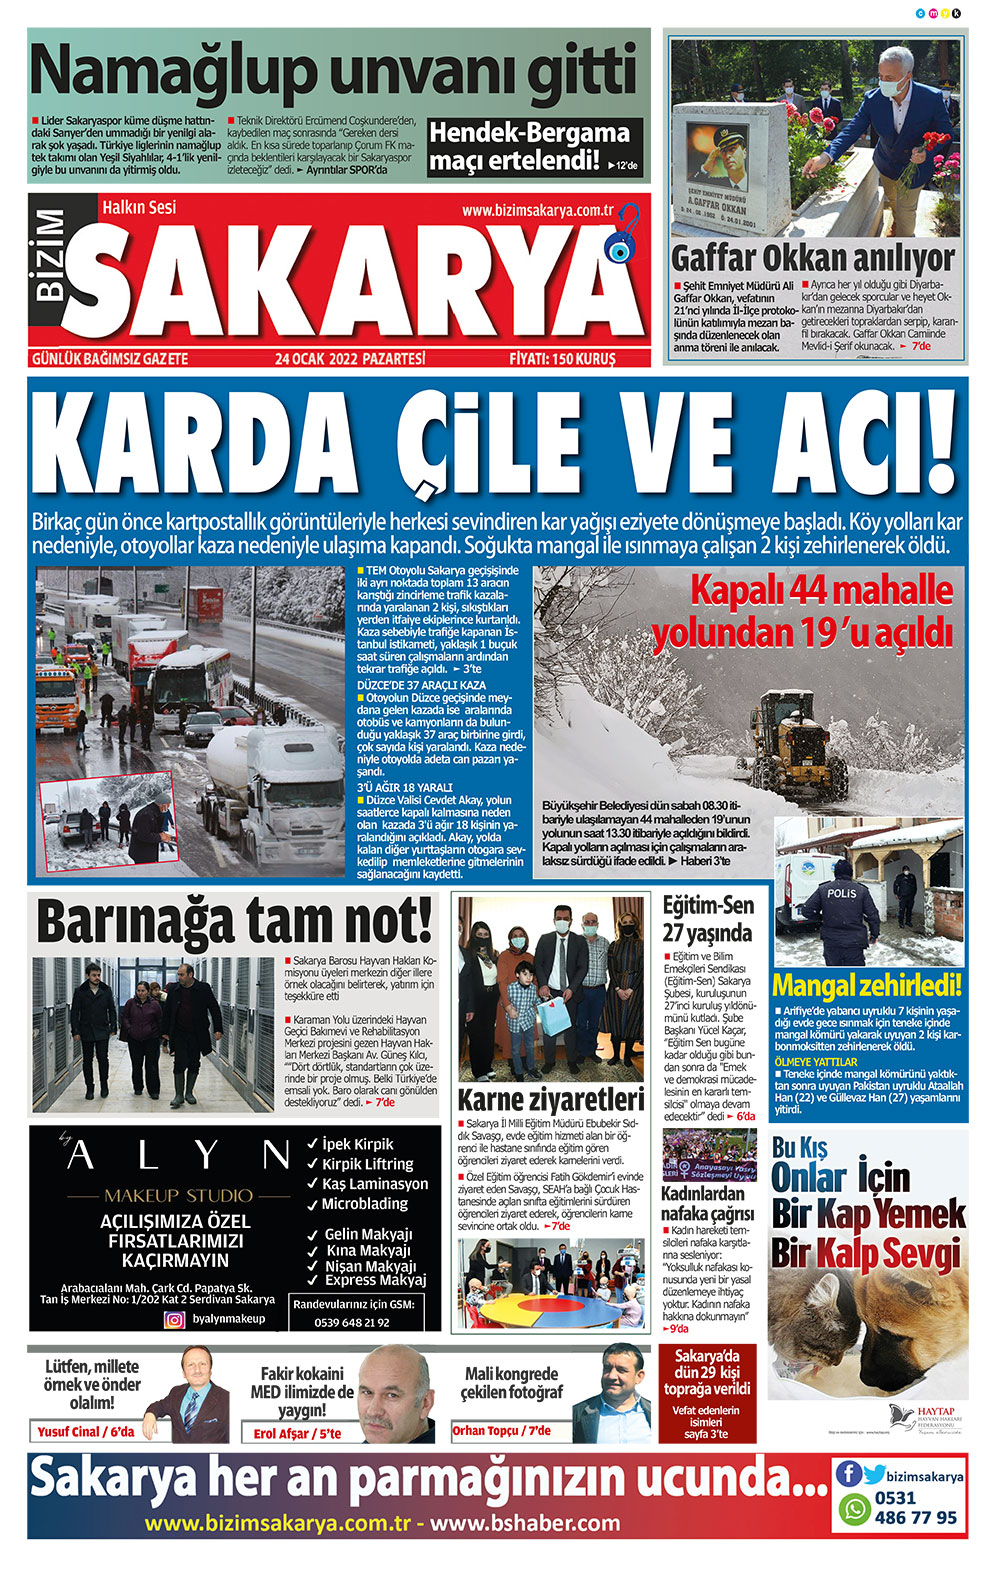 Bizim Sakarya Gazetesi - 24.01.2022 Manşeti